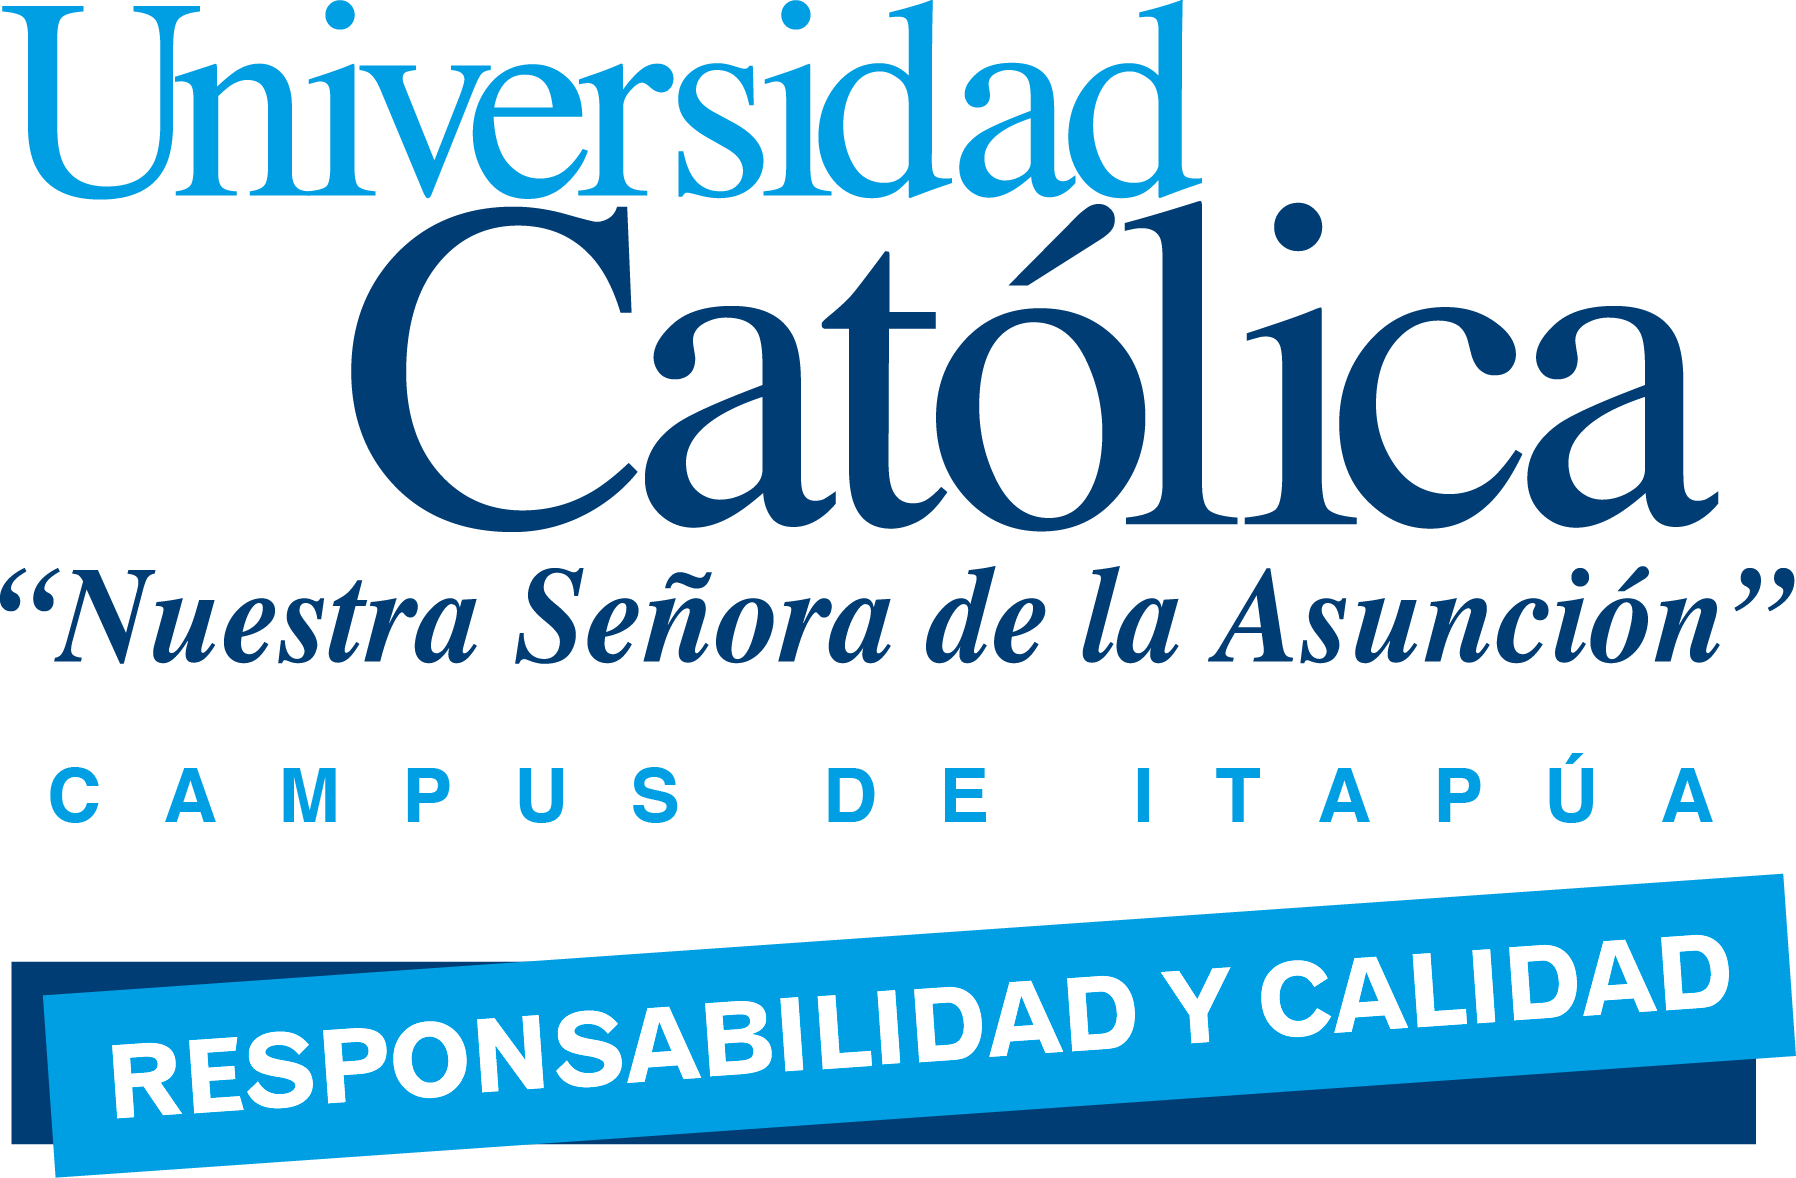 File - Logo-uci - Universidad Católica "nuestra Señora De La Asunción" (1796x1178), Png Download